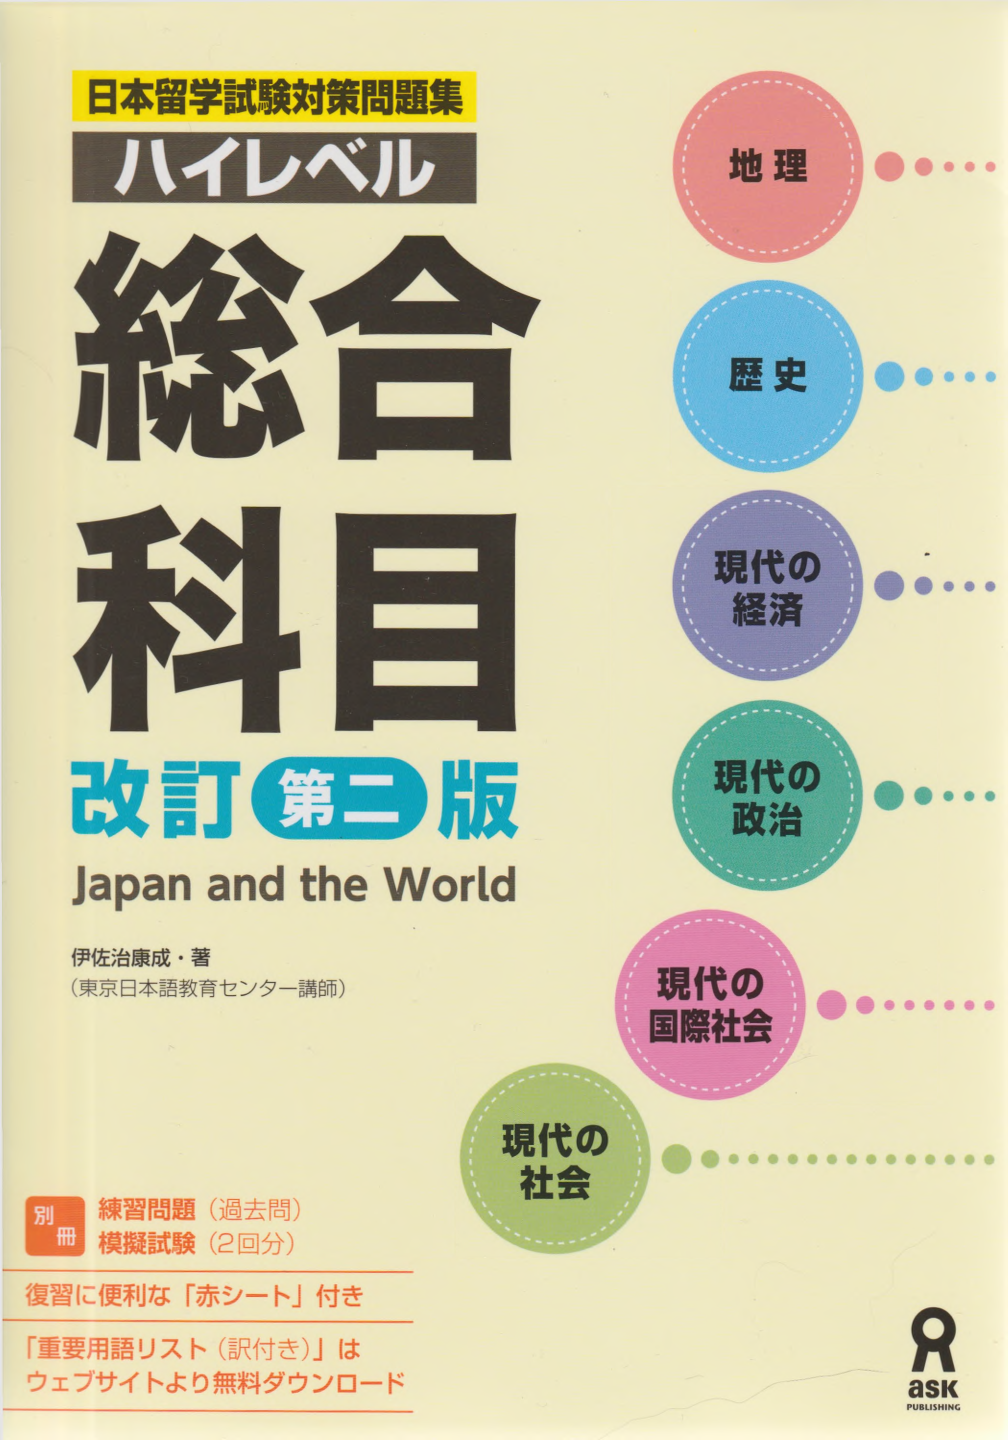 日本留学試験対策問題集